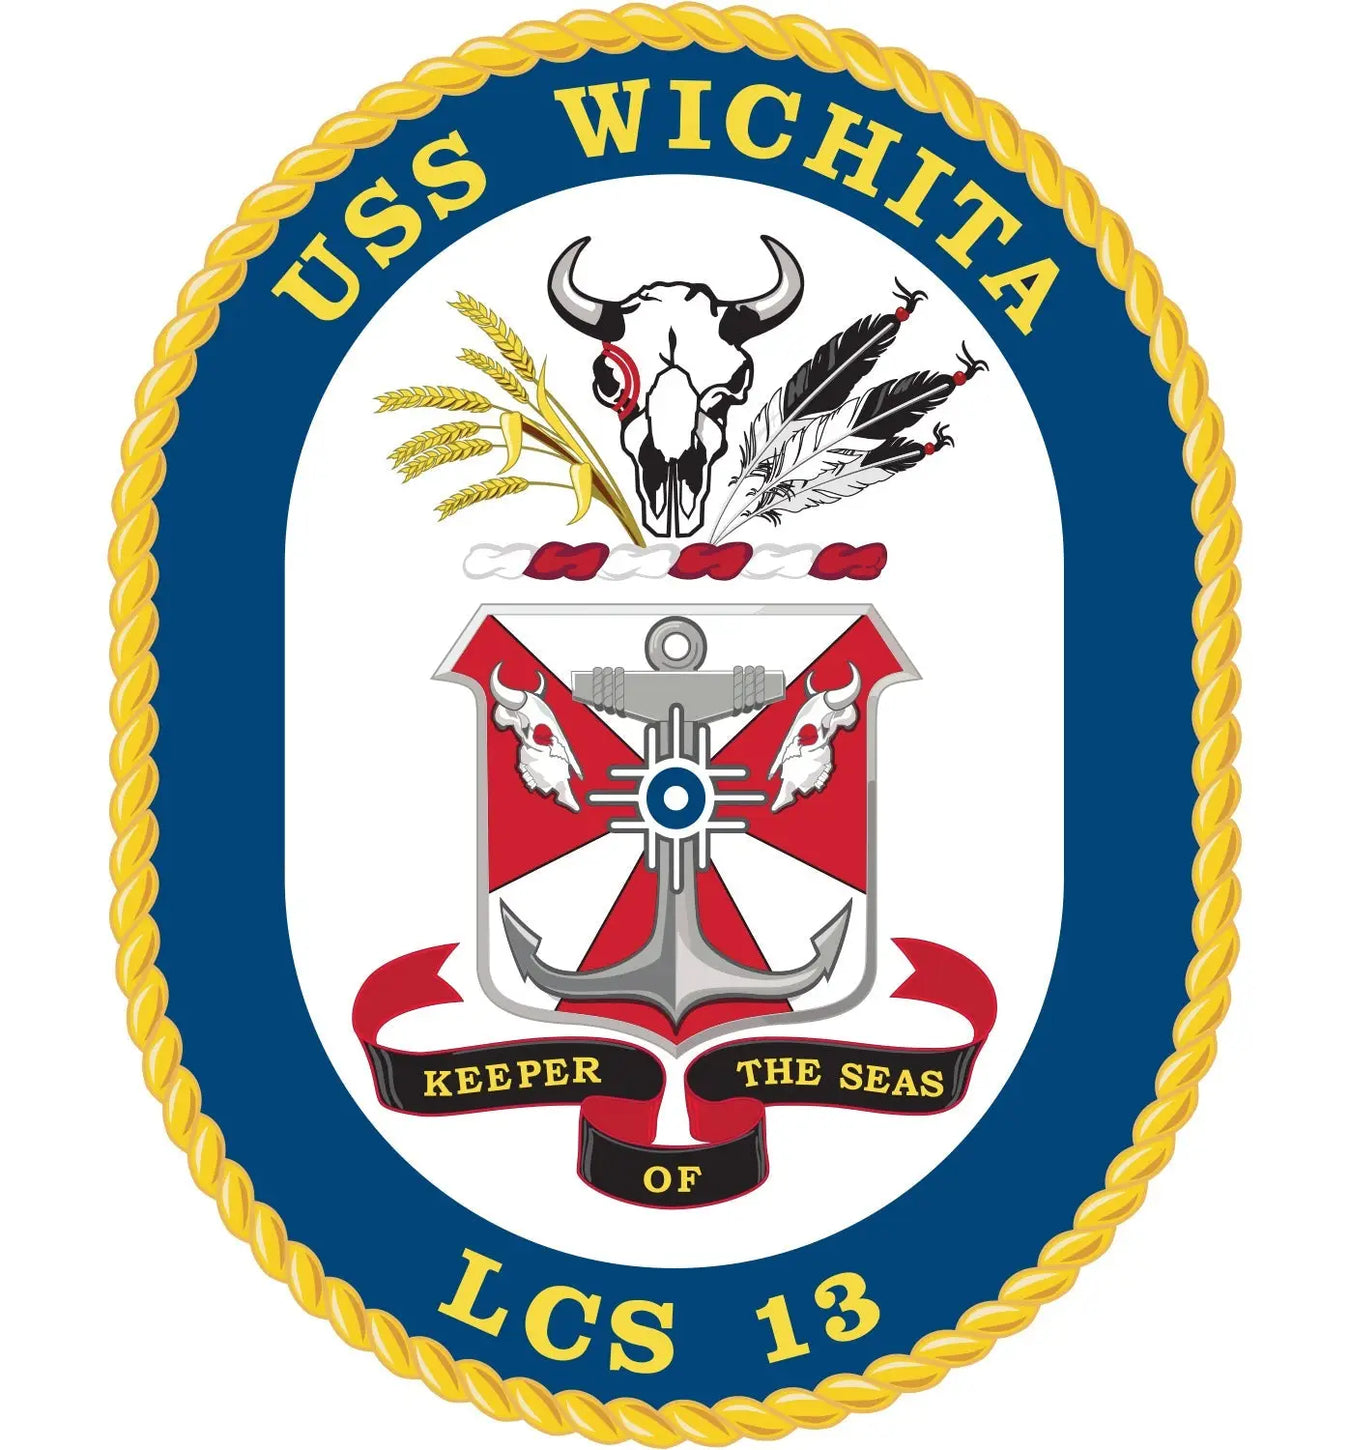 USS Wichita (LCS-13)